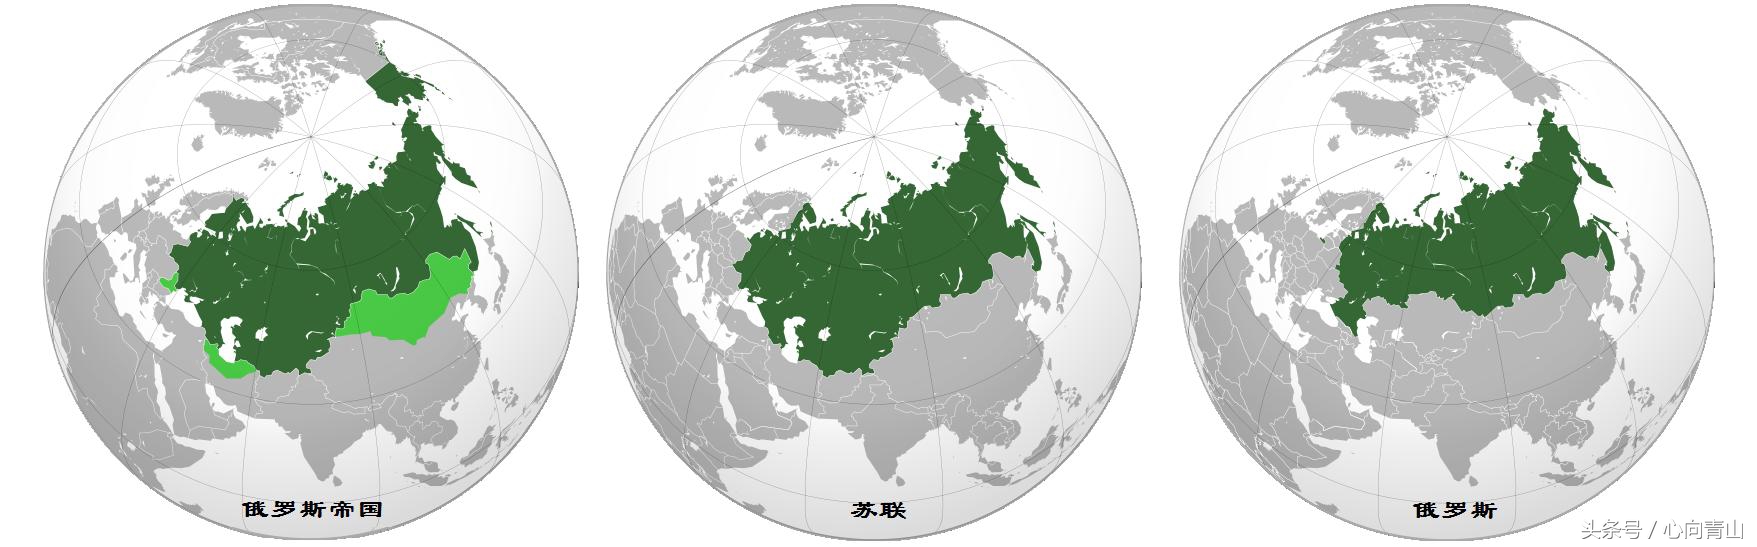 如何区分沙俄、俄罗斯共和国、苏俄、苏联、俄罗斯联邦、独联体？